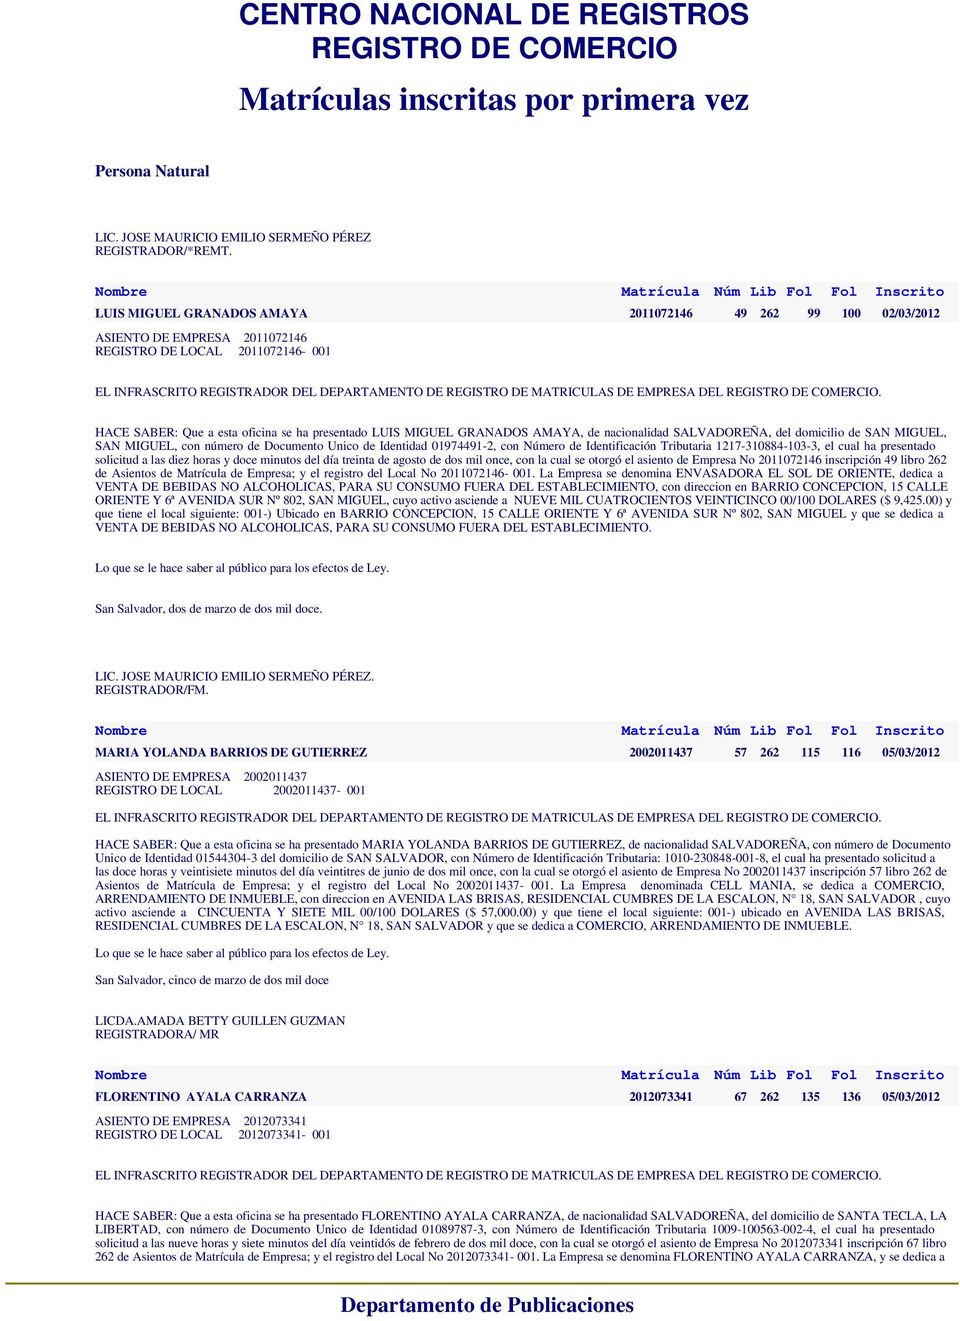 AMAYA, de nacionalidad SALVADOREÑA, del domicilio de SAN MIGUEL, SAN MIGUEL, con número de Documento Unico de Identidad 01974491-2, con Número de Identificación Tributaria 1217-310884-103-3, el cual